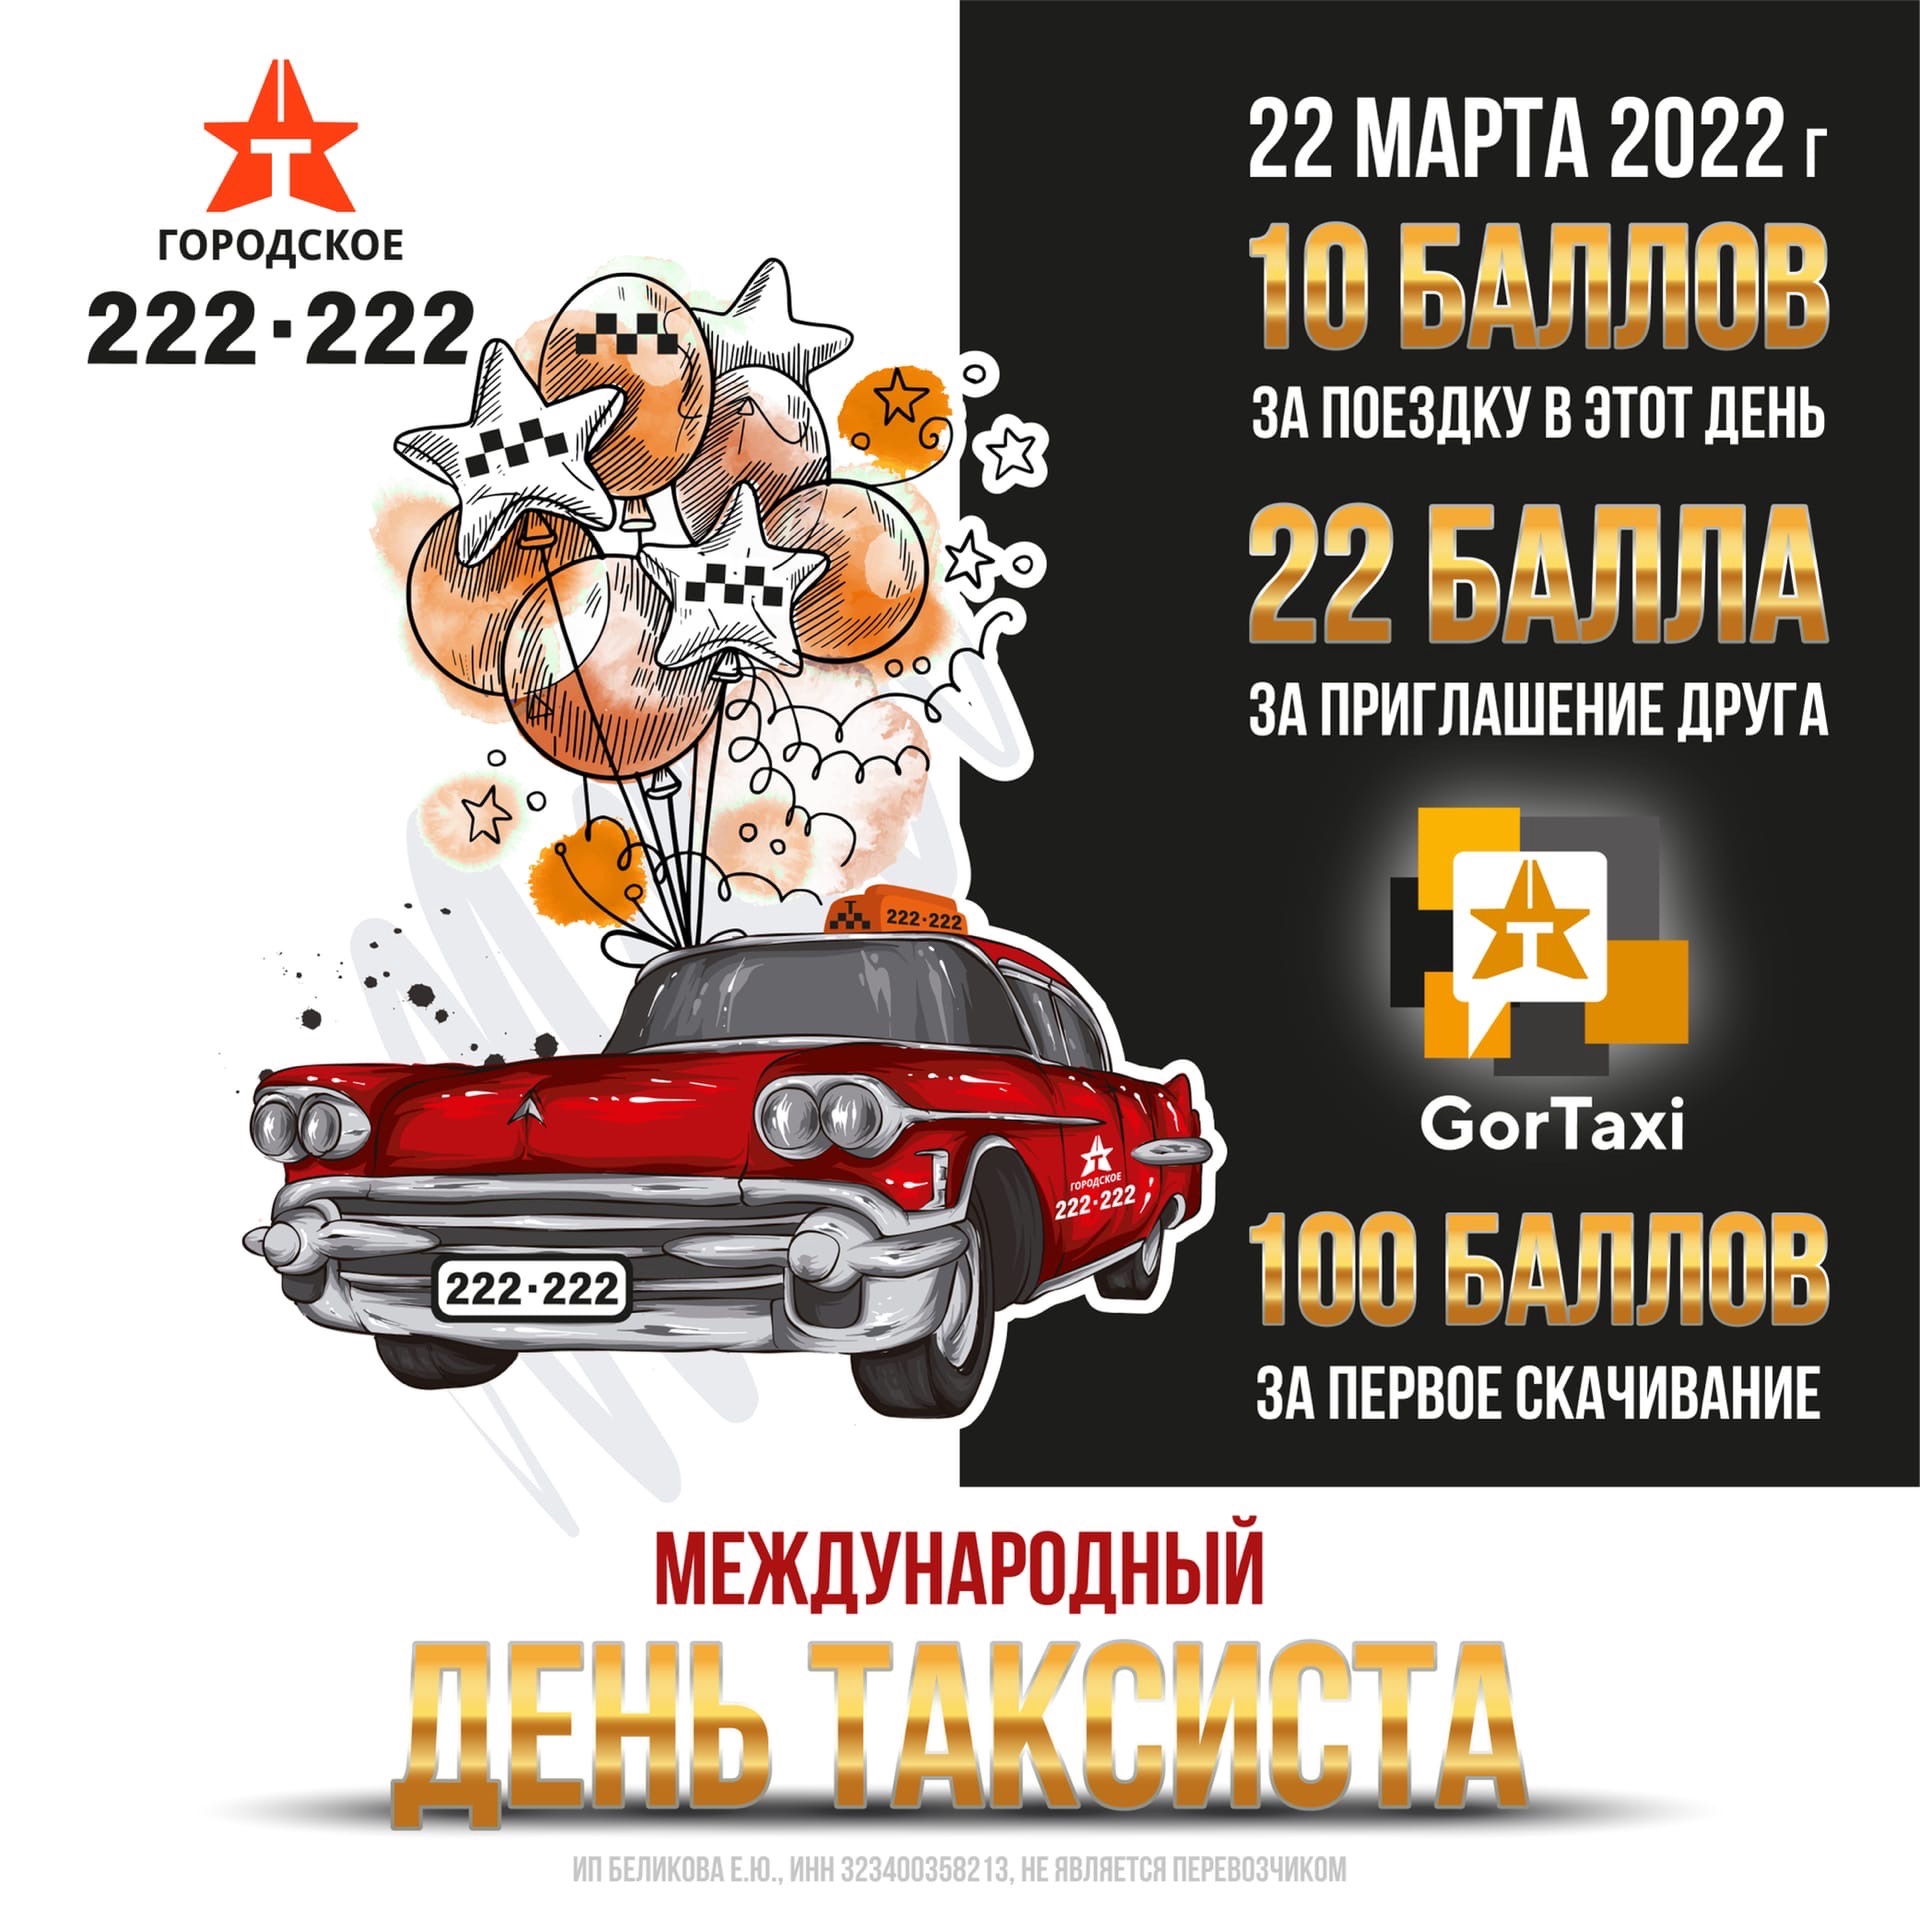 22 марта 2022! В международный день таксиста!